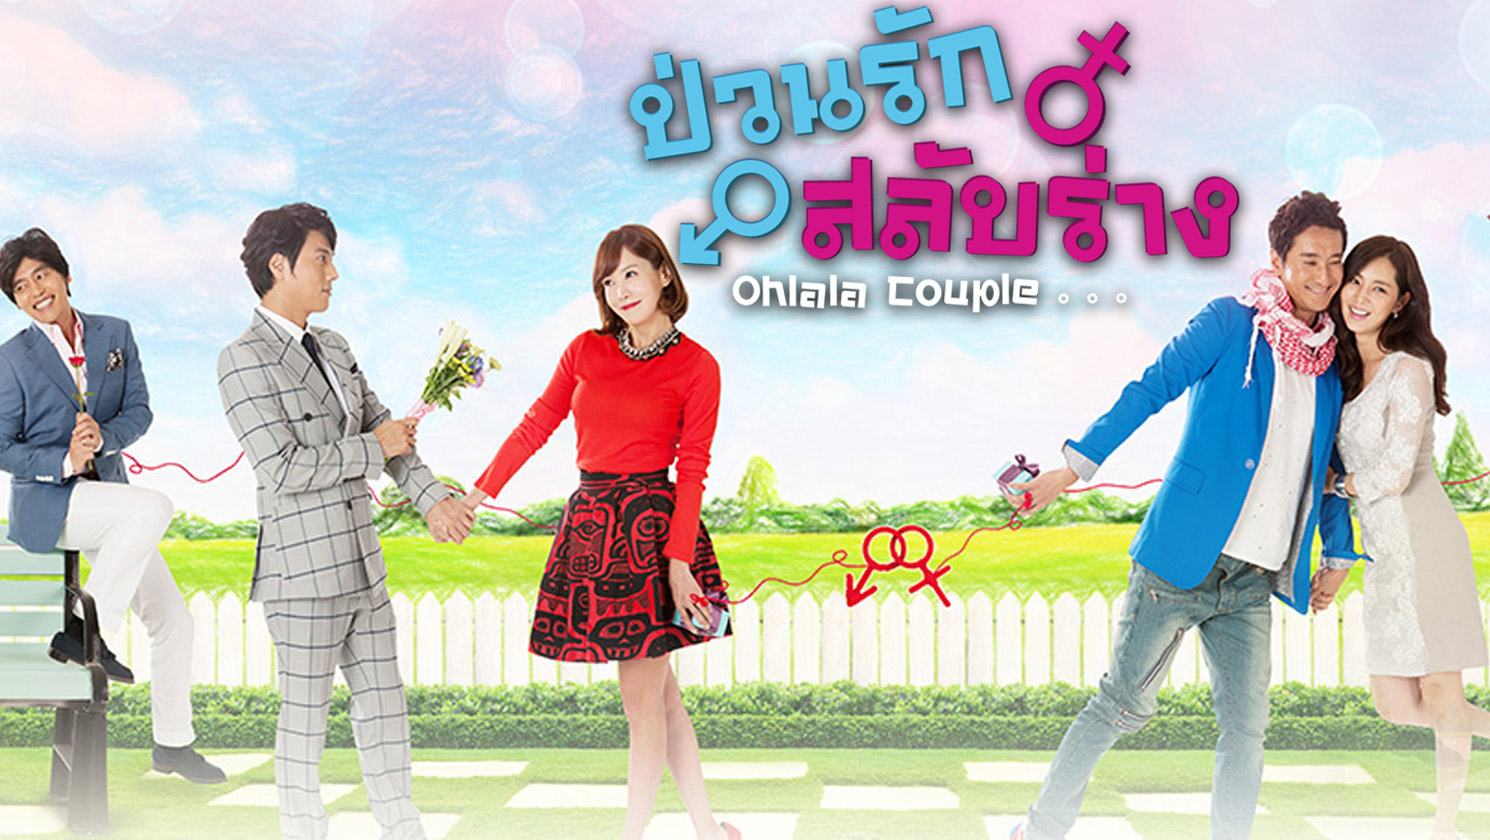 ซีรี่ย์เกาหลี Ohlala couple ป่วนรัก สลับร่าง พากย์ไทย Ep.1-18 (จบ)